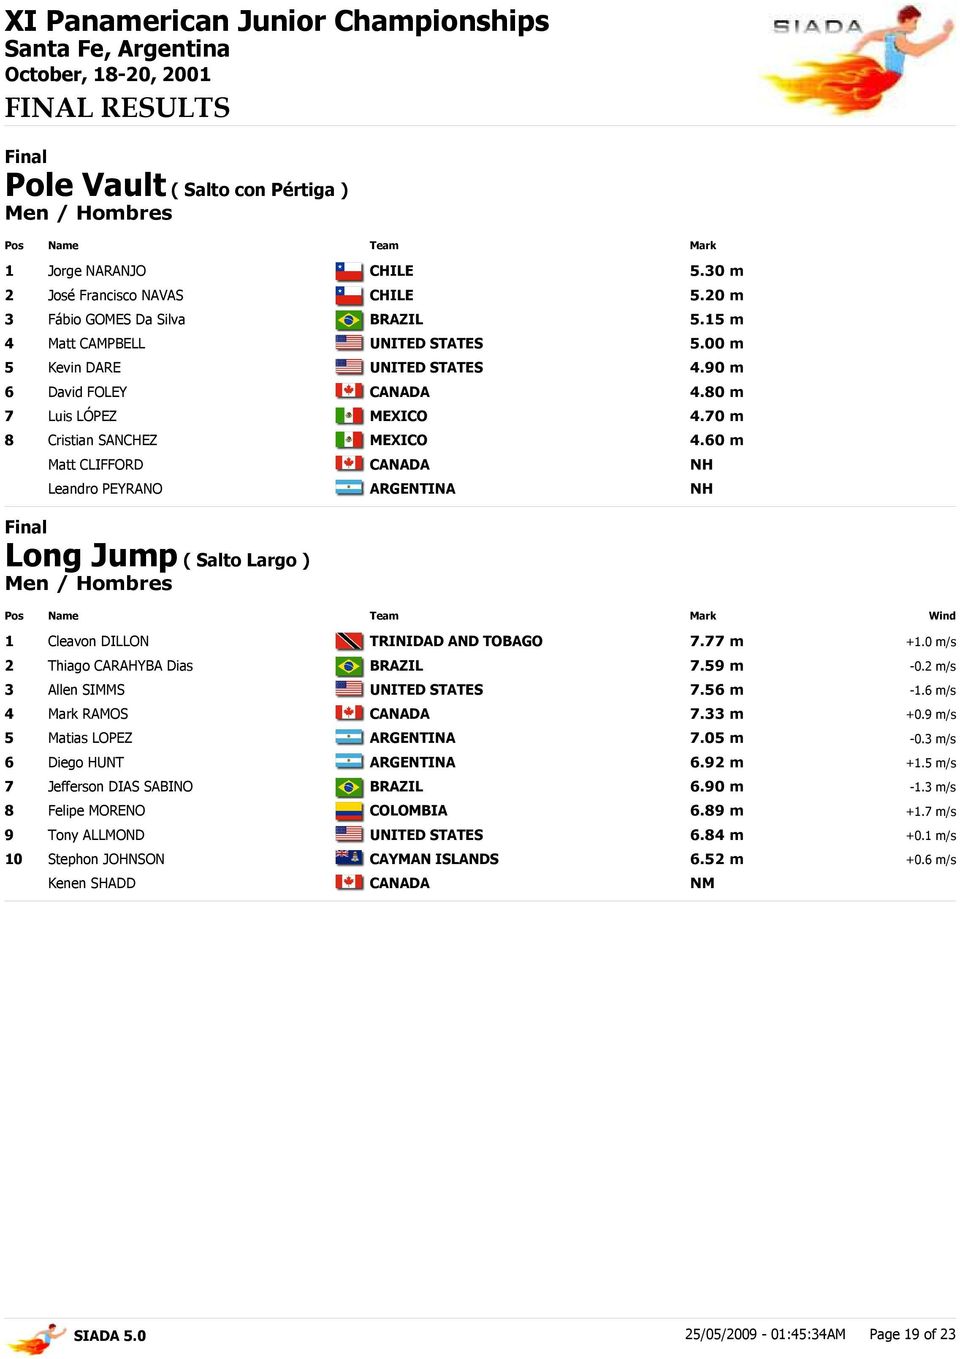 0 m/s 2 Thiago CARAHYBA Dias 7.59 m -0.2 m/s 3 Allen SIMMS 7.56 m -1.6 m/s 4 Mark RAMOS 7.33 m +0.9 m/s 5 Matias LOPEZ 7.05 m -0.3 m/s 6 Diego HUNT 6.92 m +1.